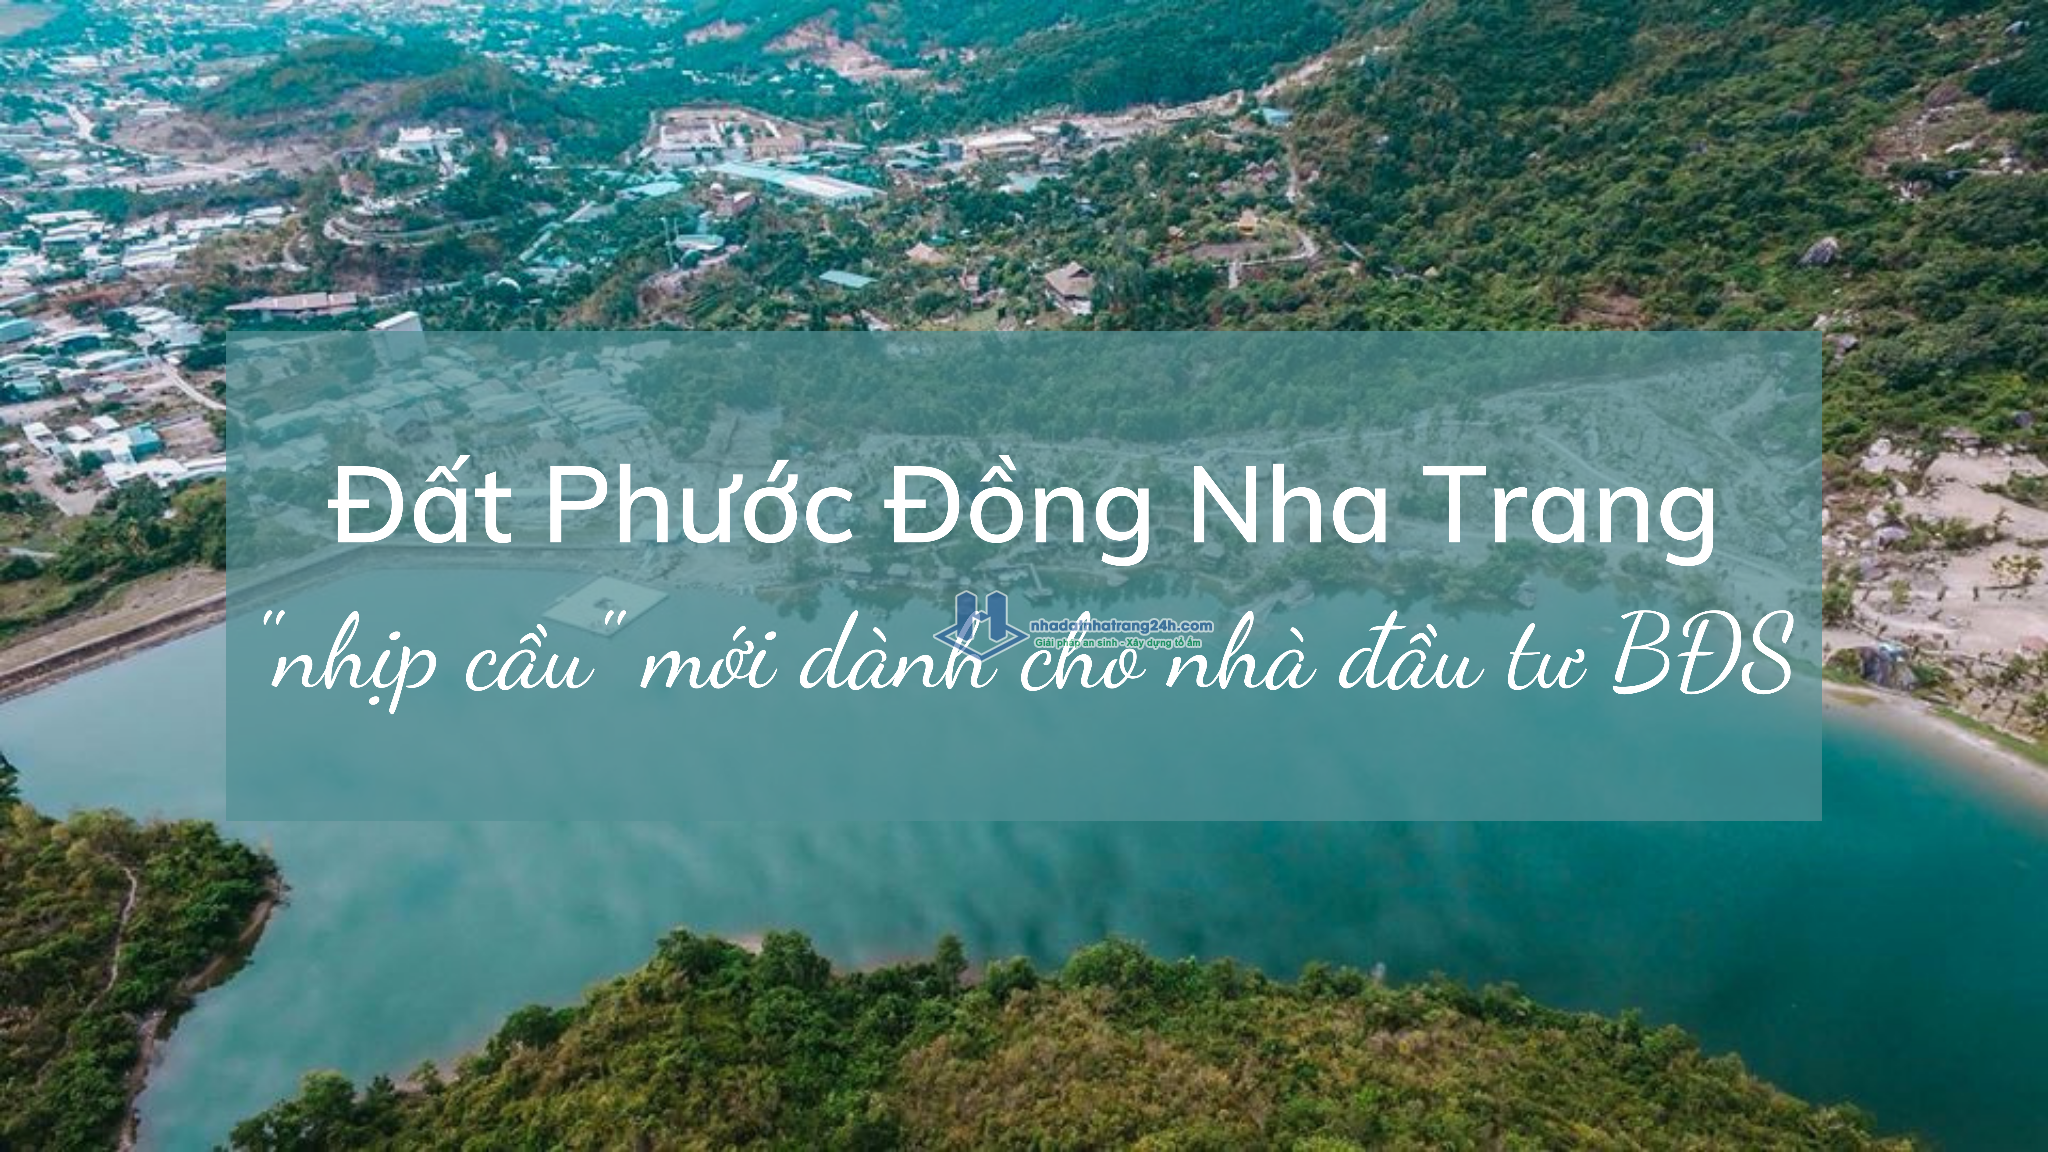 Bán đất Phước Đồng Nha Trang giá rẻ